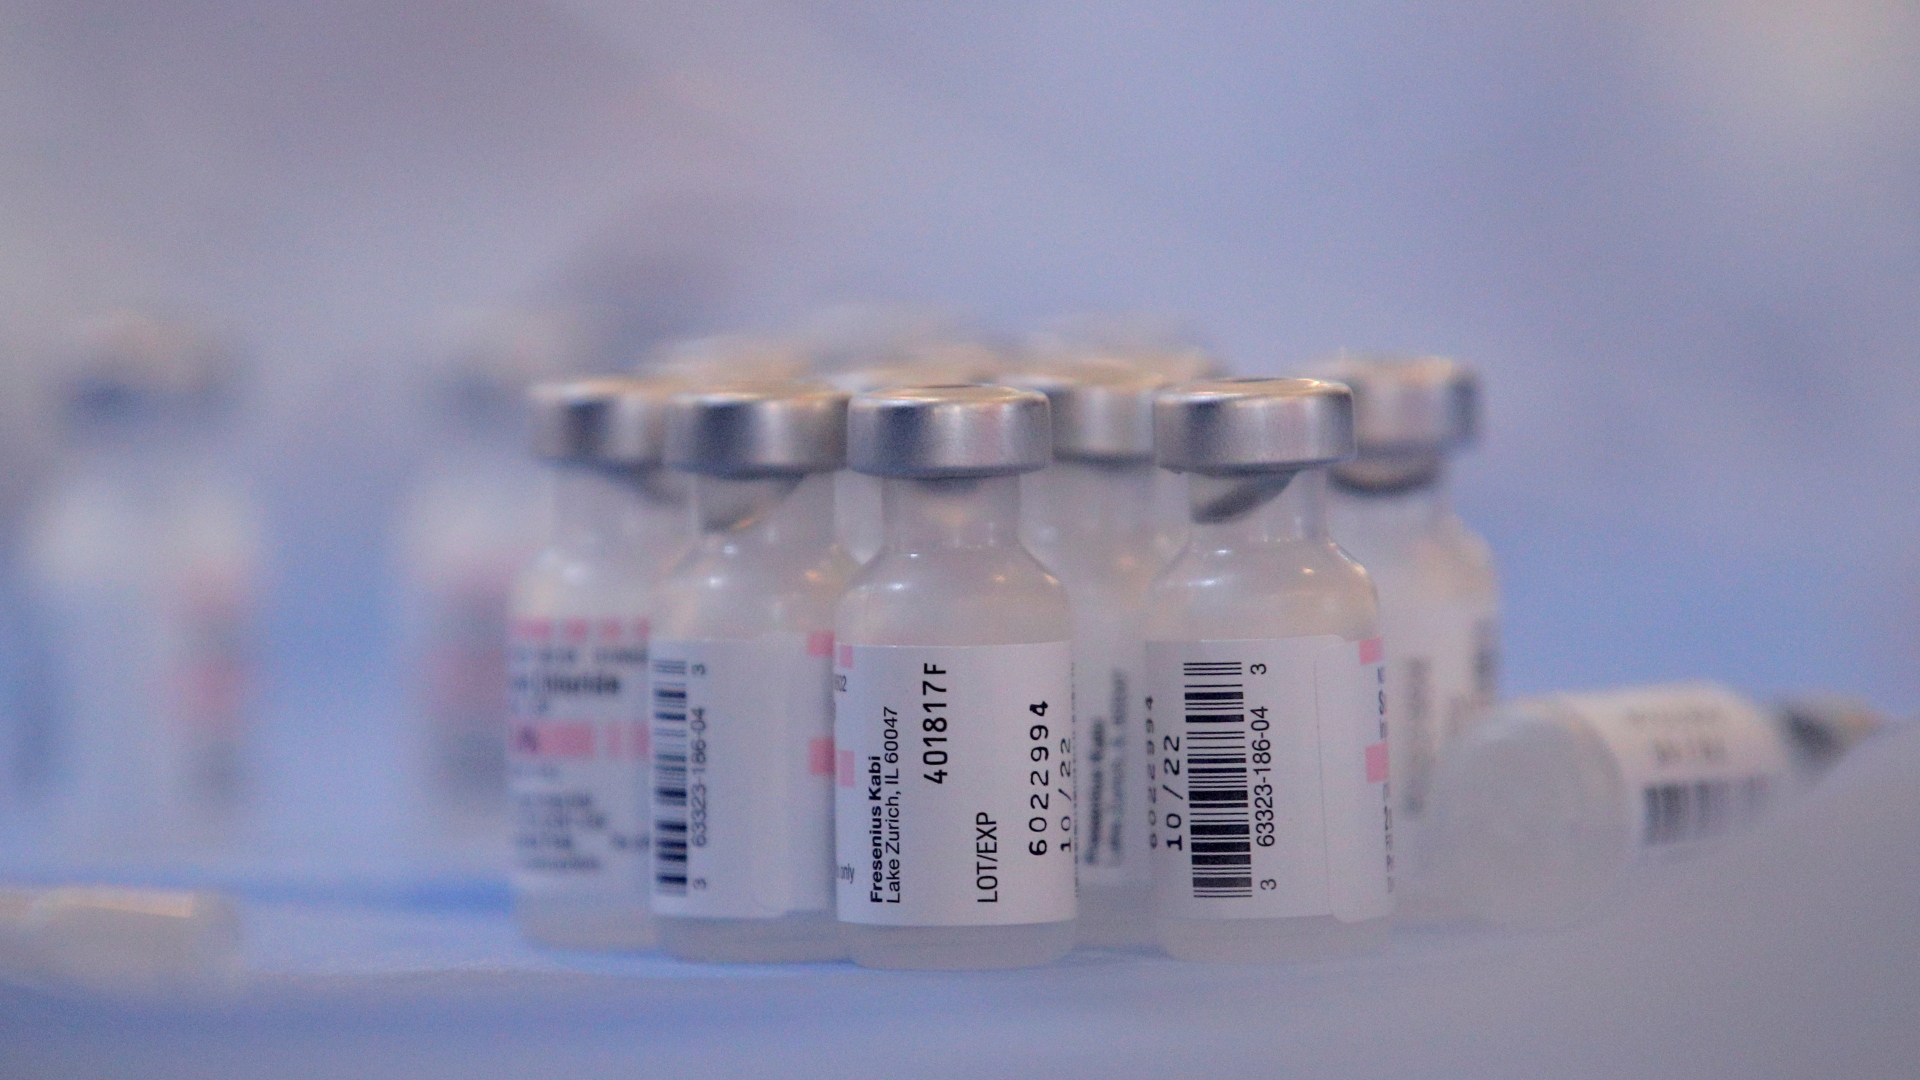 Colômbia recebeu 117 mil doses de vacinas por meio da iniciativa Covax